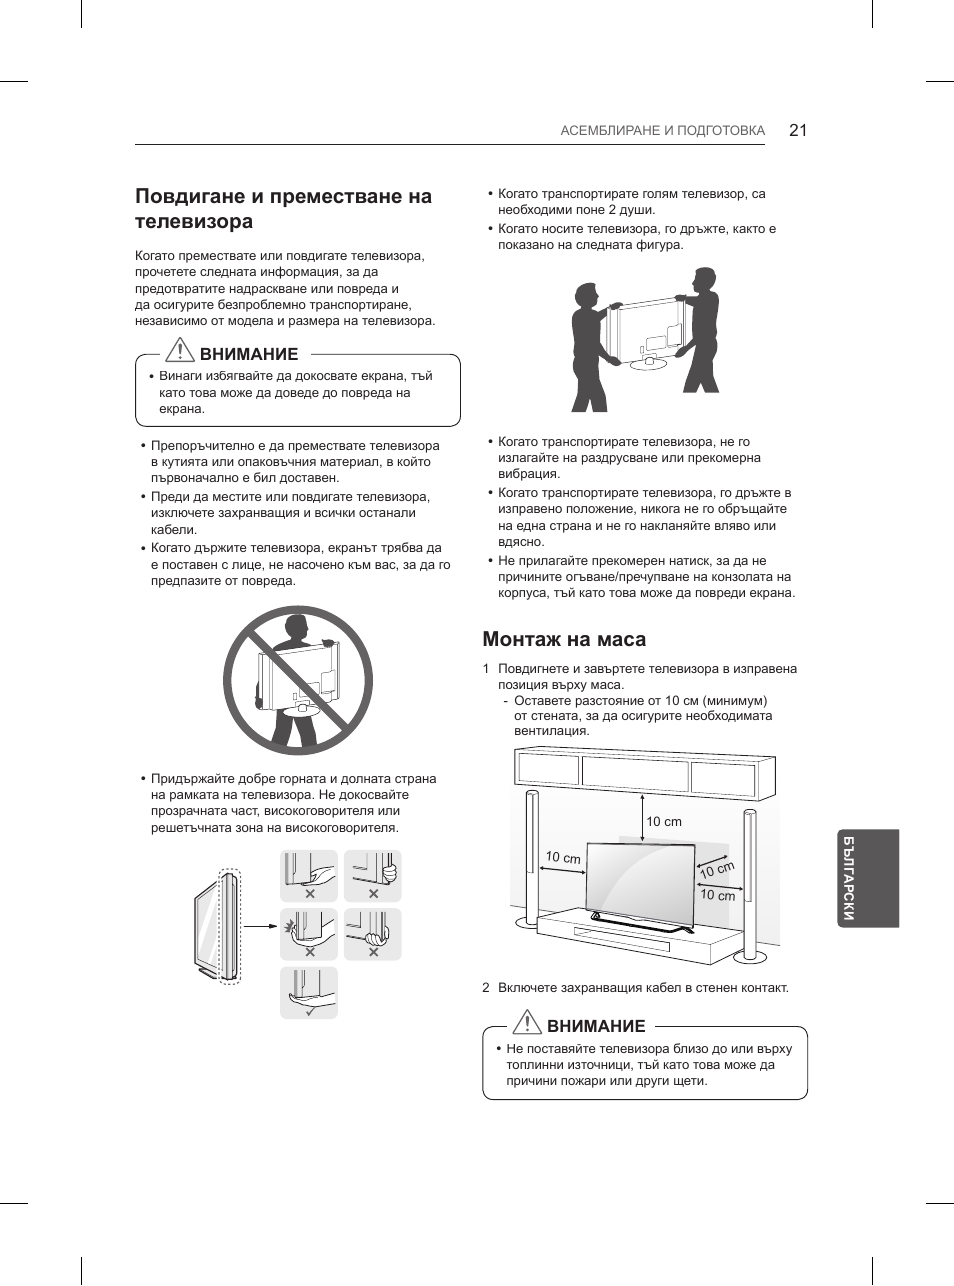 Повдигане и преместване на телевизора, Монтаж на маса | LG 84UB980V User Manual | Page 281 / 332